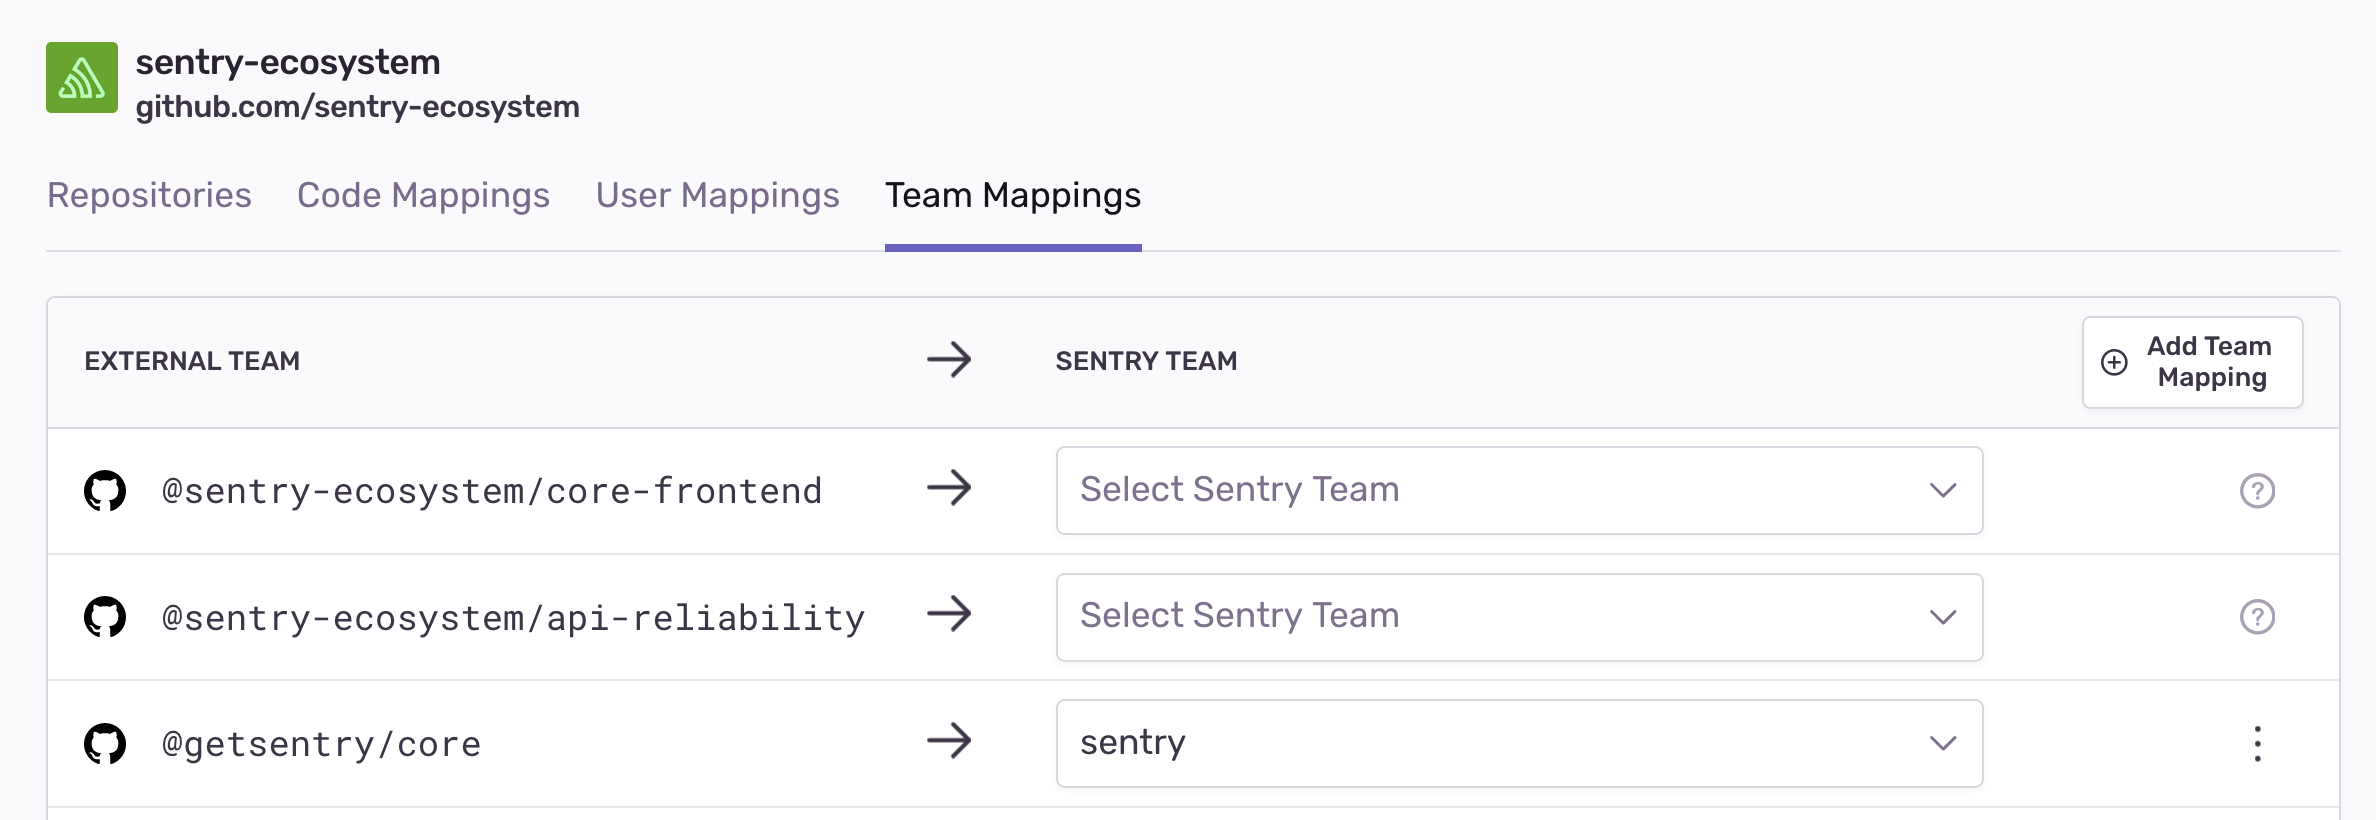 External team mappings for GitHub/Gitlab